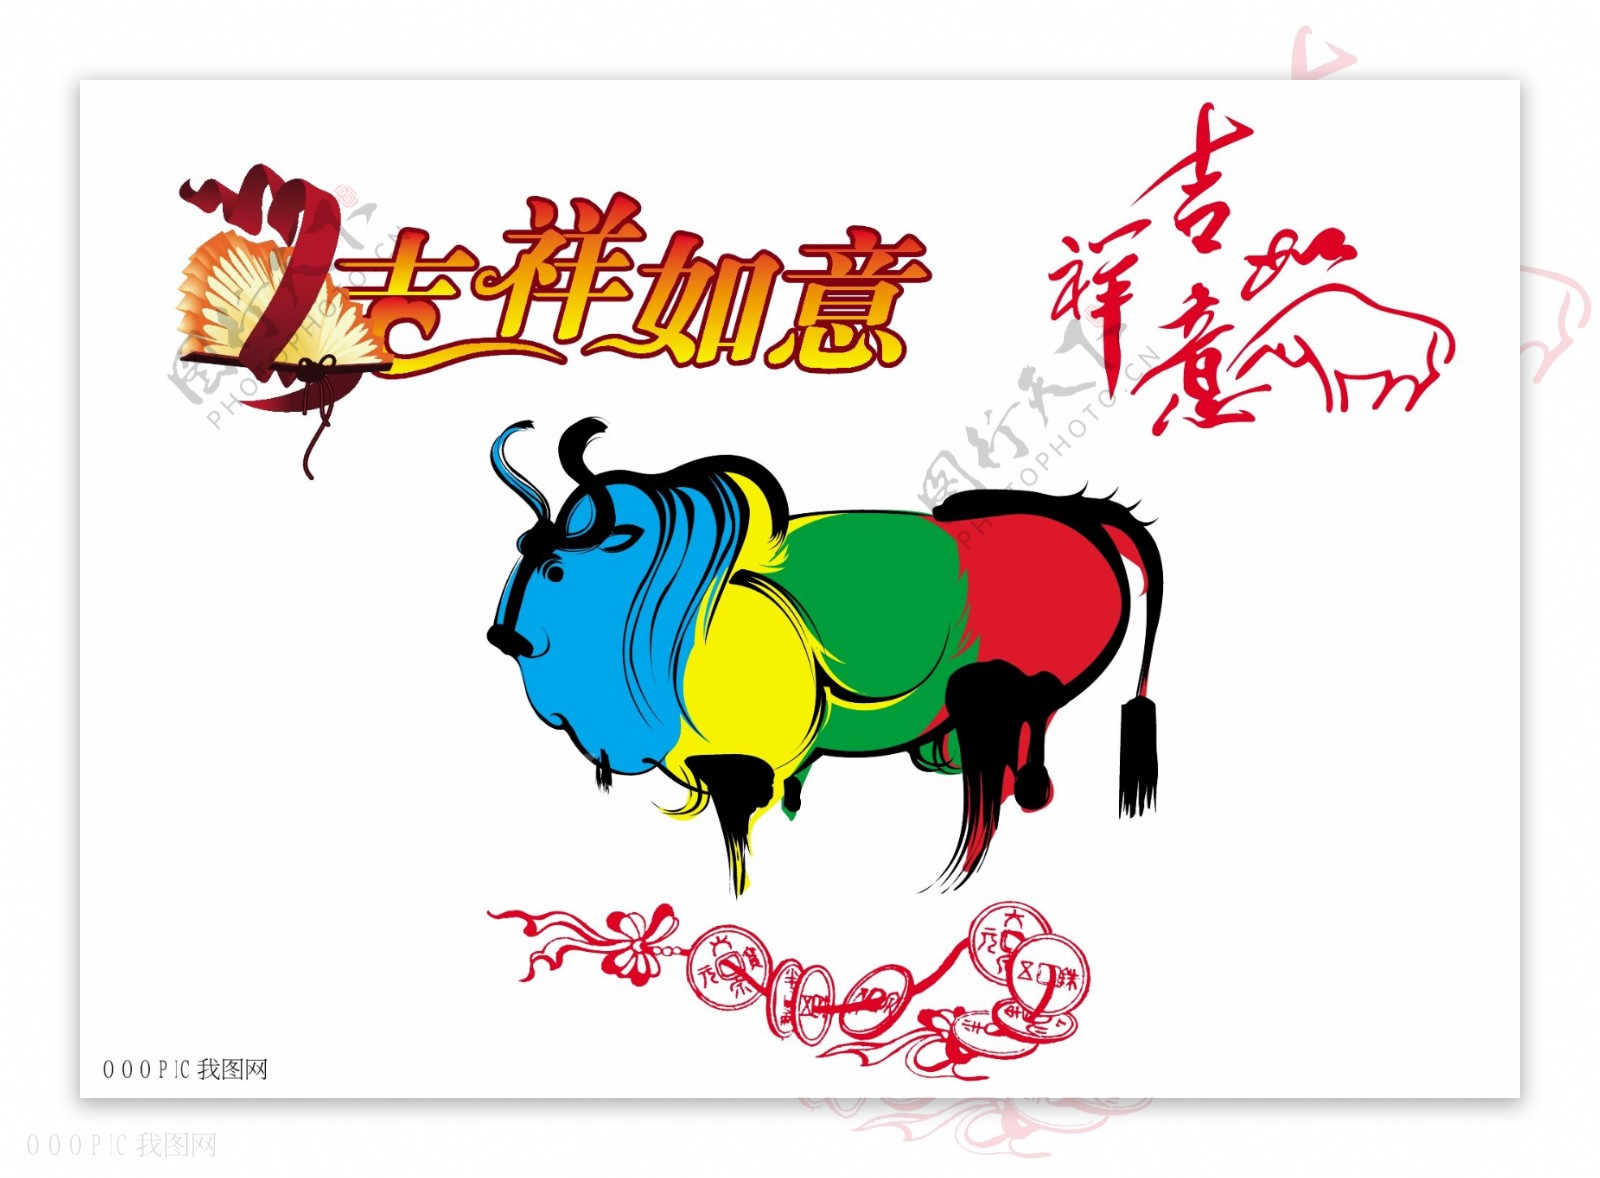 2009年牛年春节贺卡设计素材